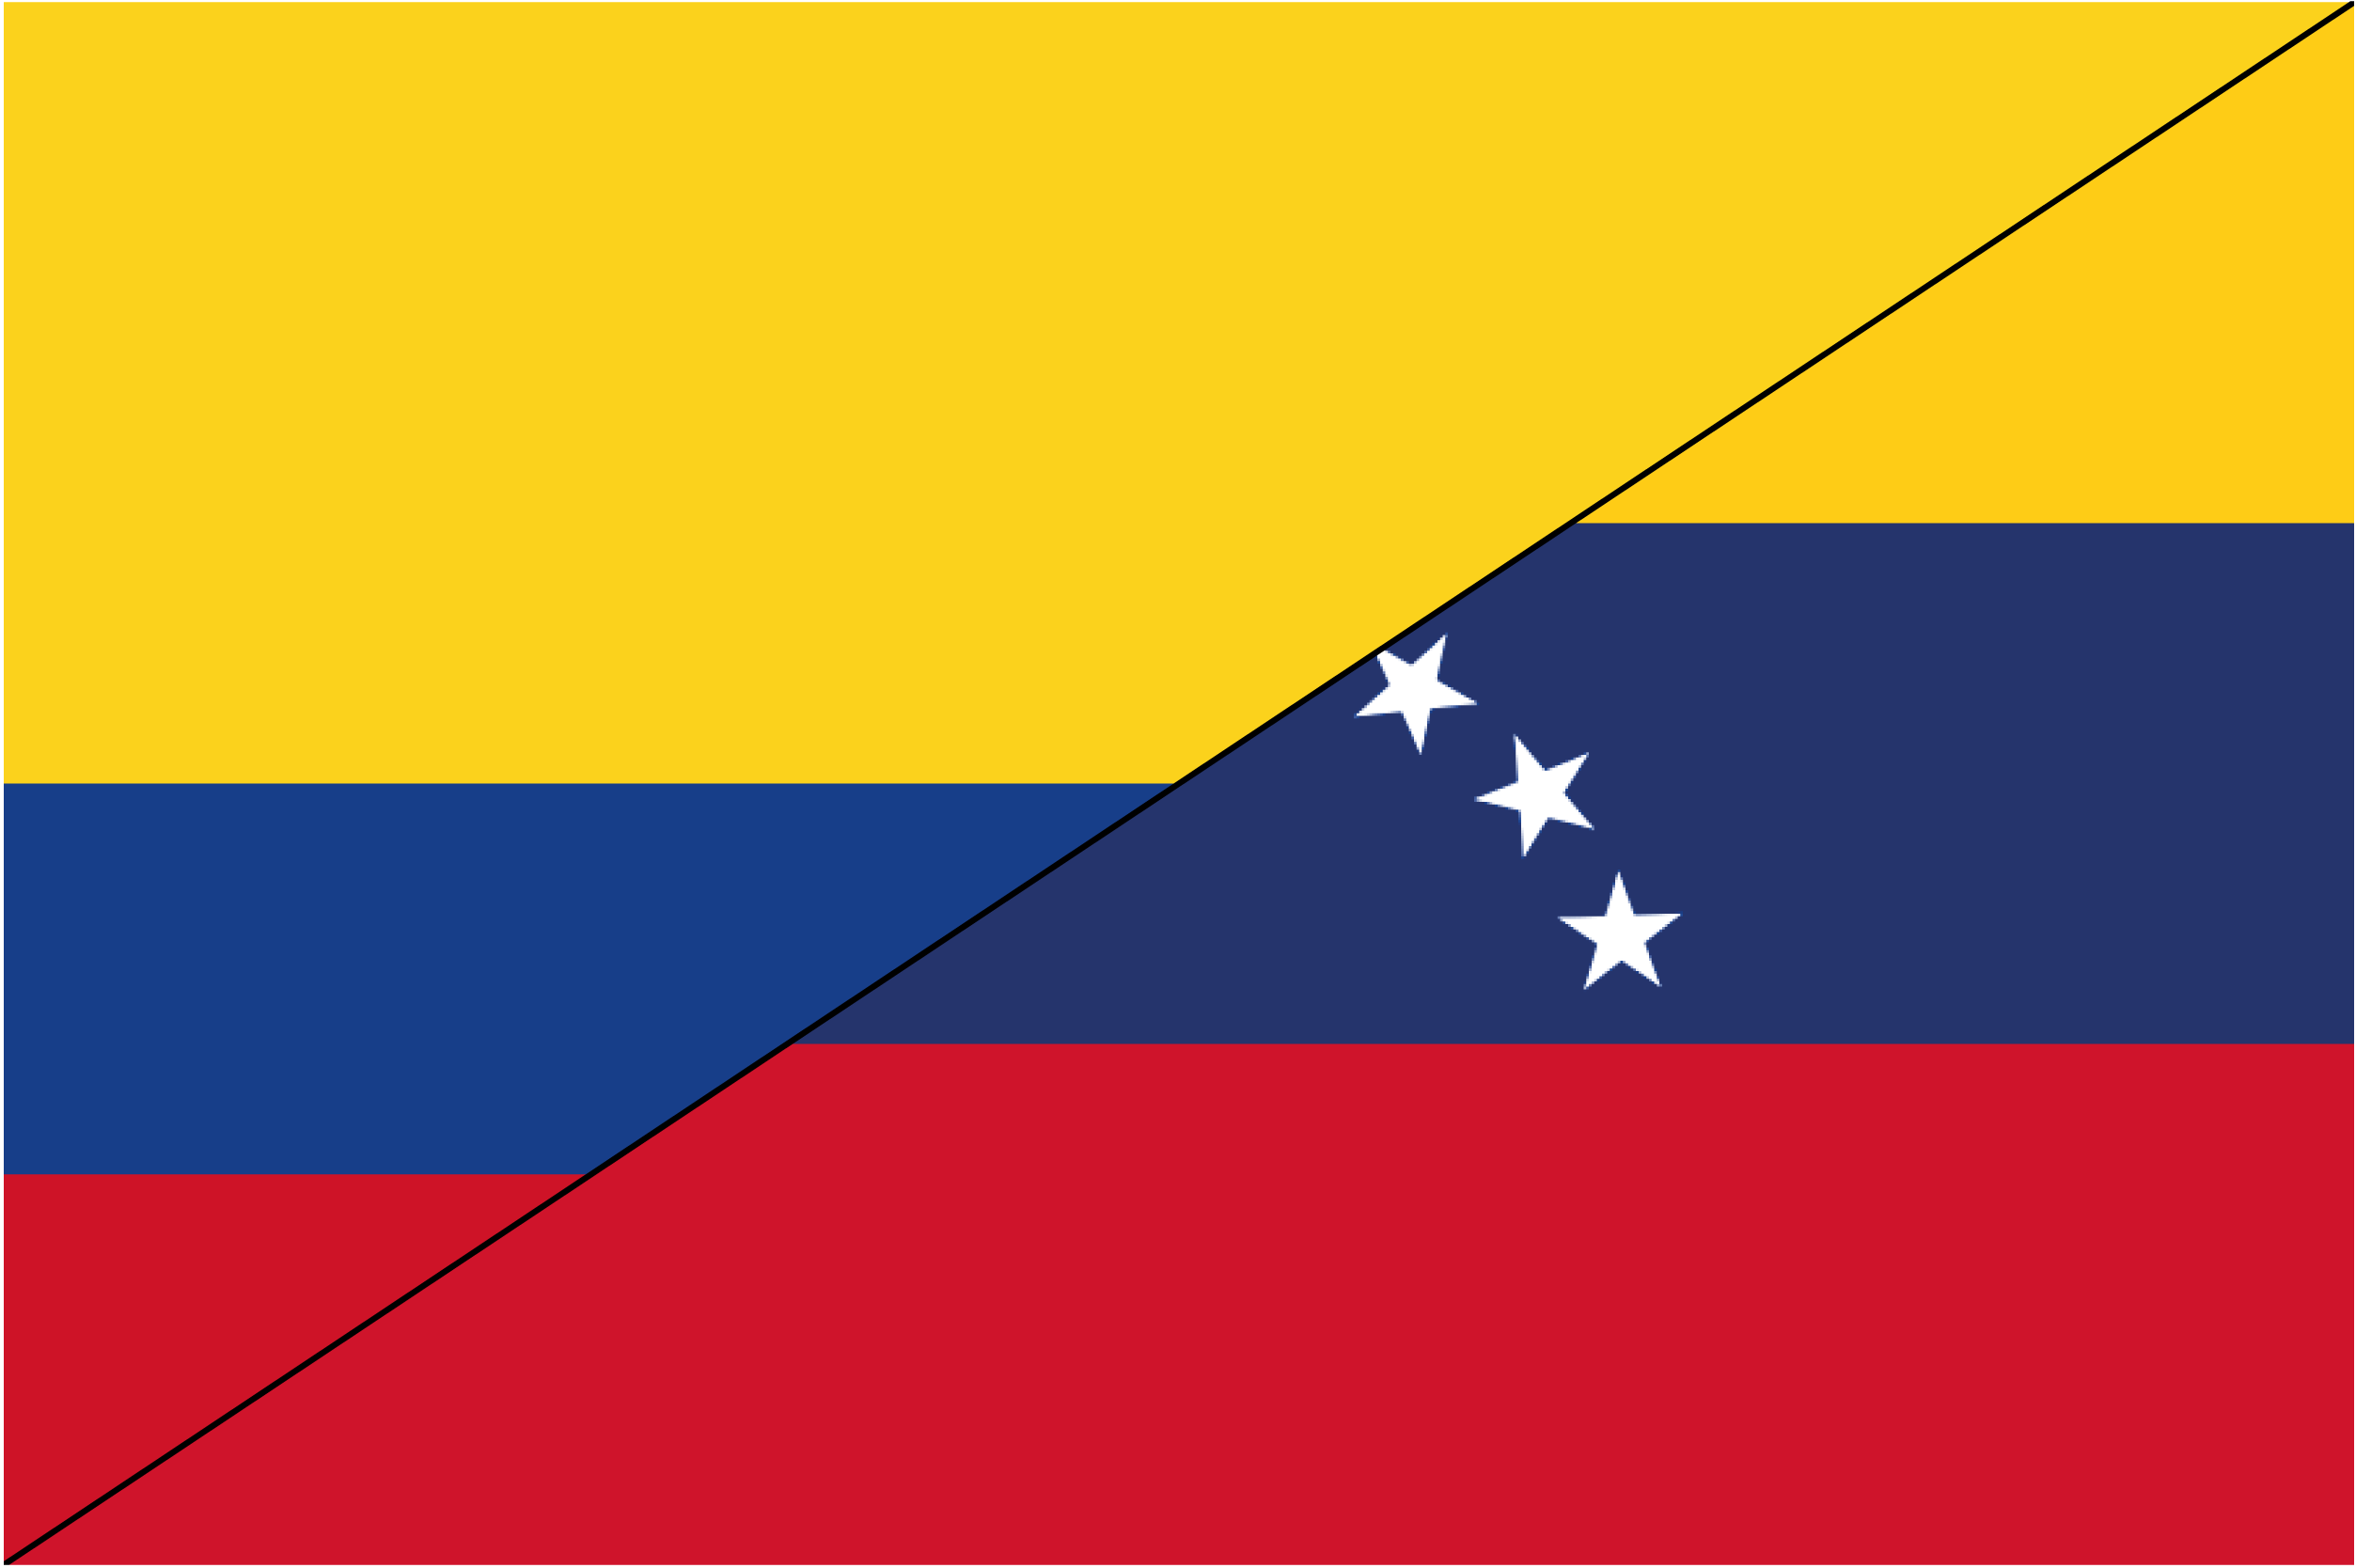 A imigração venezuelana em território colombiano na atualidade